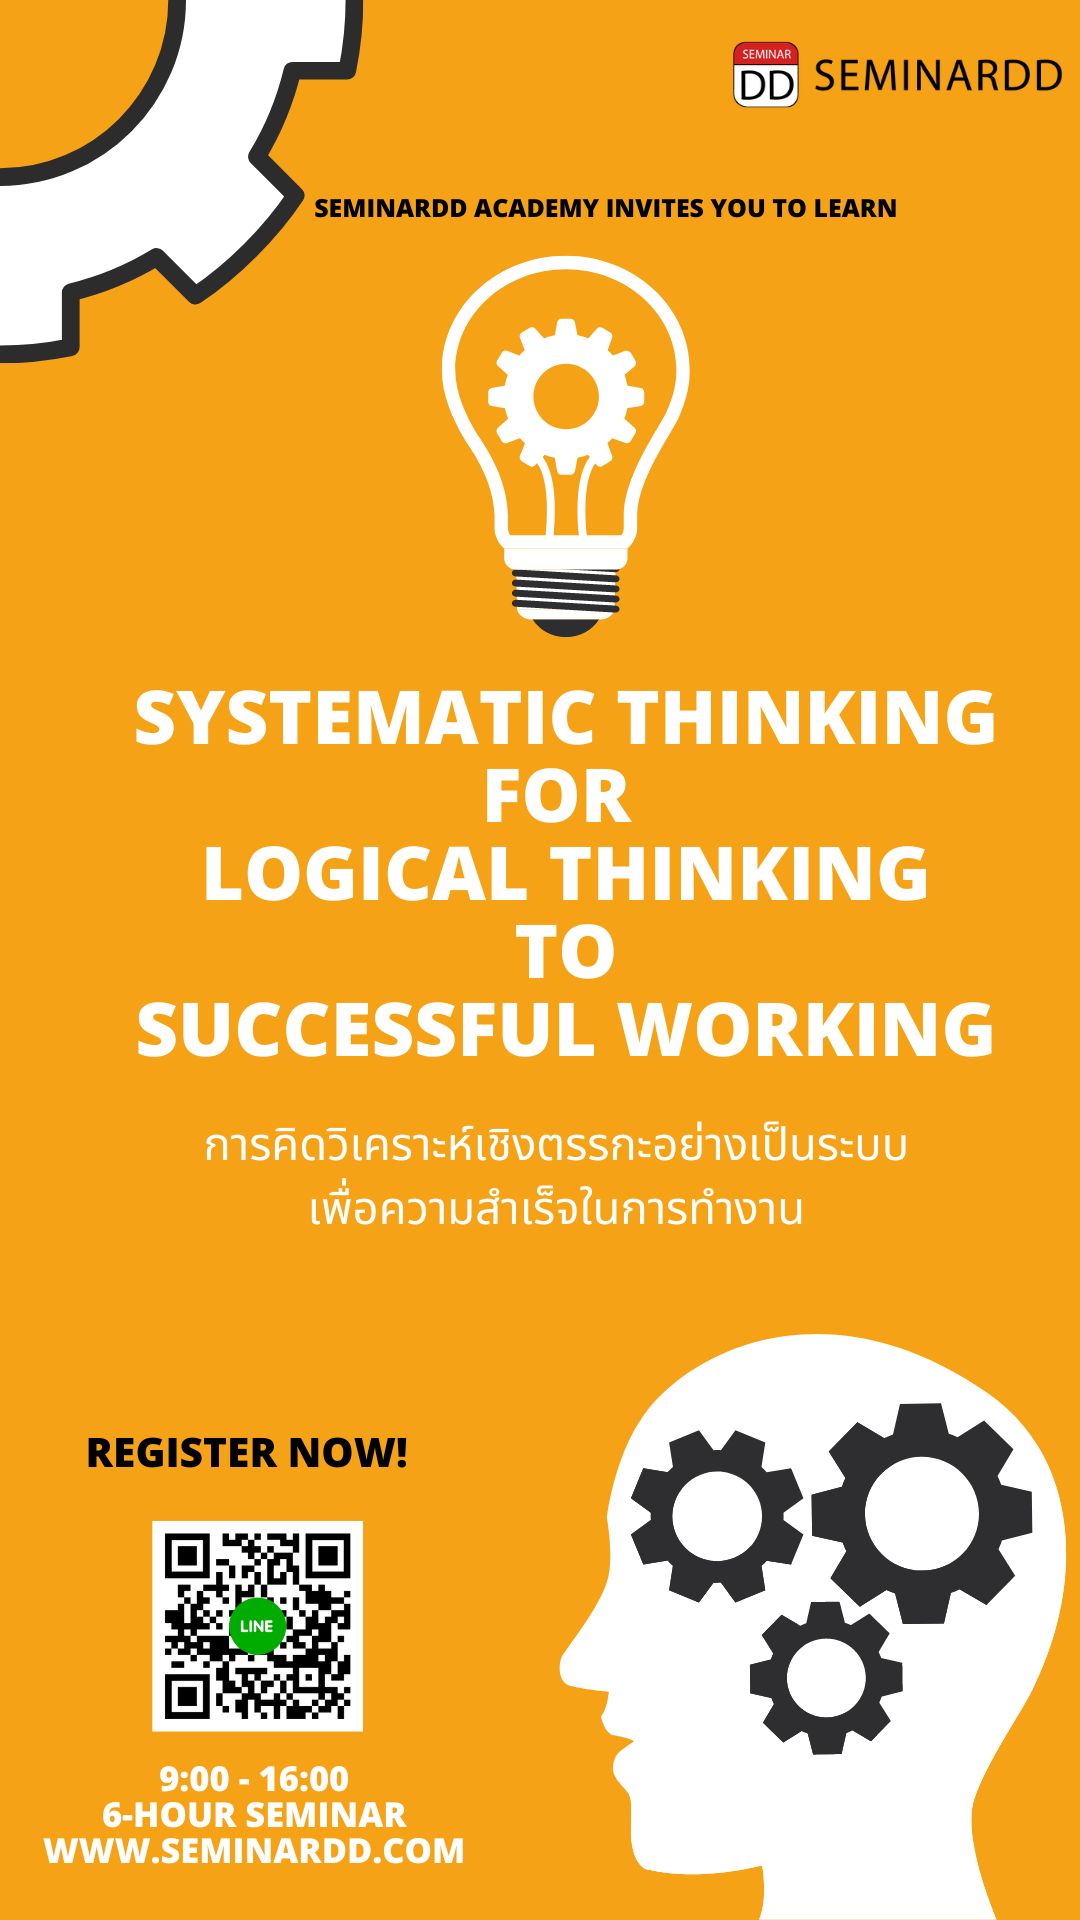 หลักสูตรอบรม การคิดวิเคราะห์เชิงตรรกะอย่างเป็นระบบเพื่อความสำเร็จในการทำงาน ( Systematic Thinking for Logical  Thinking to Successful Working )